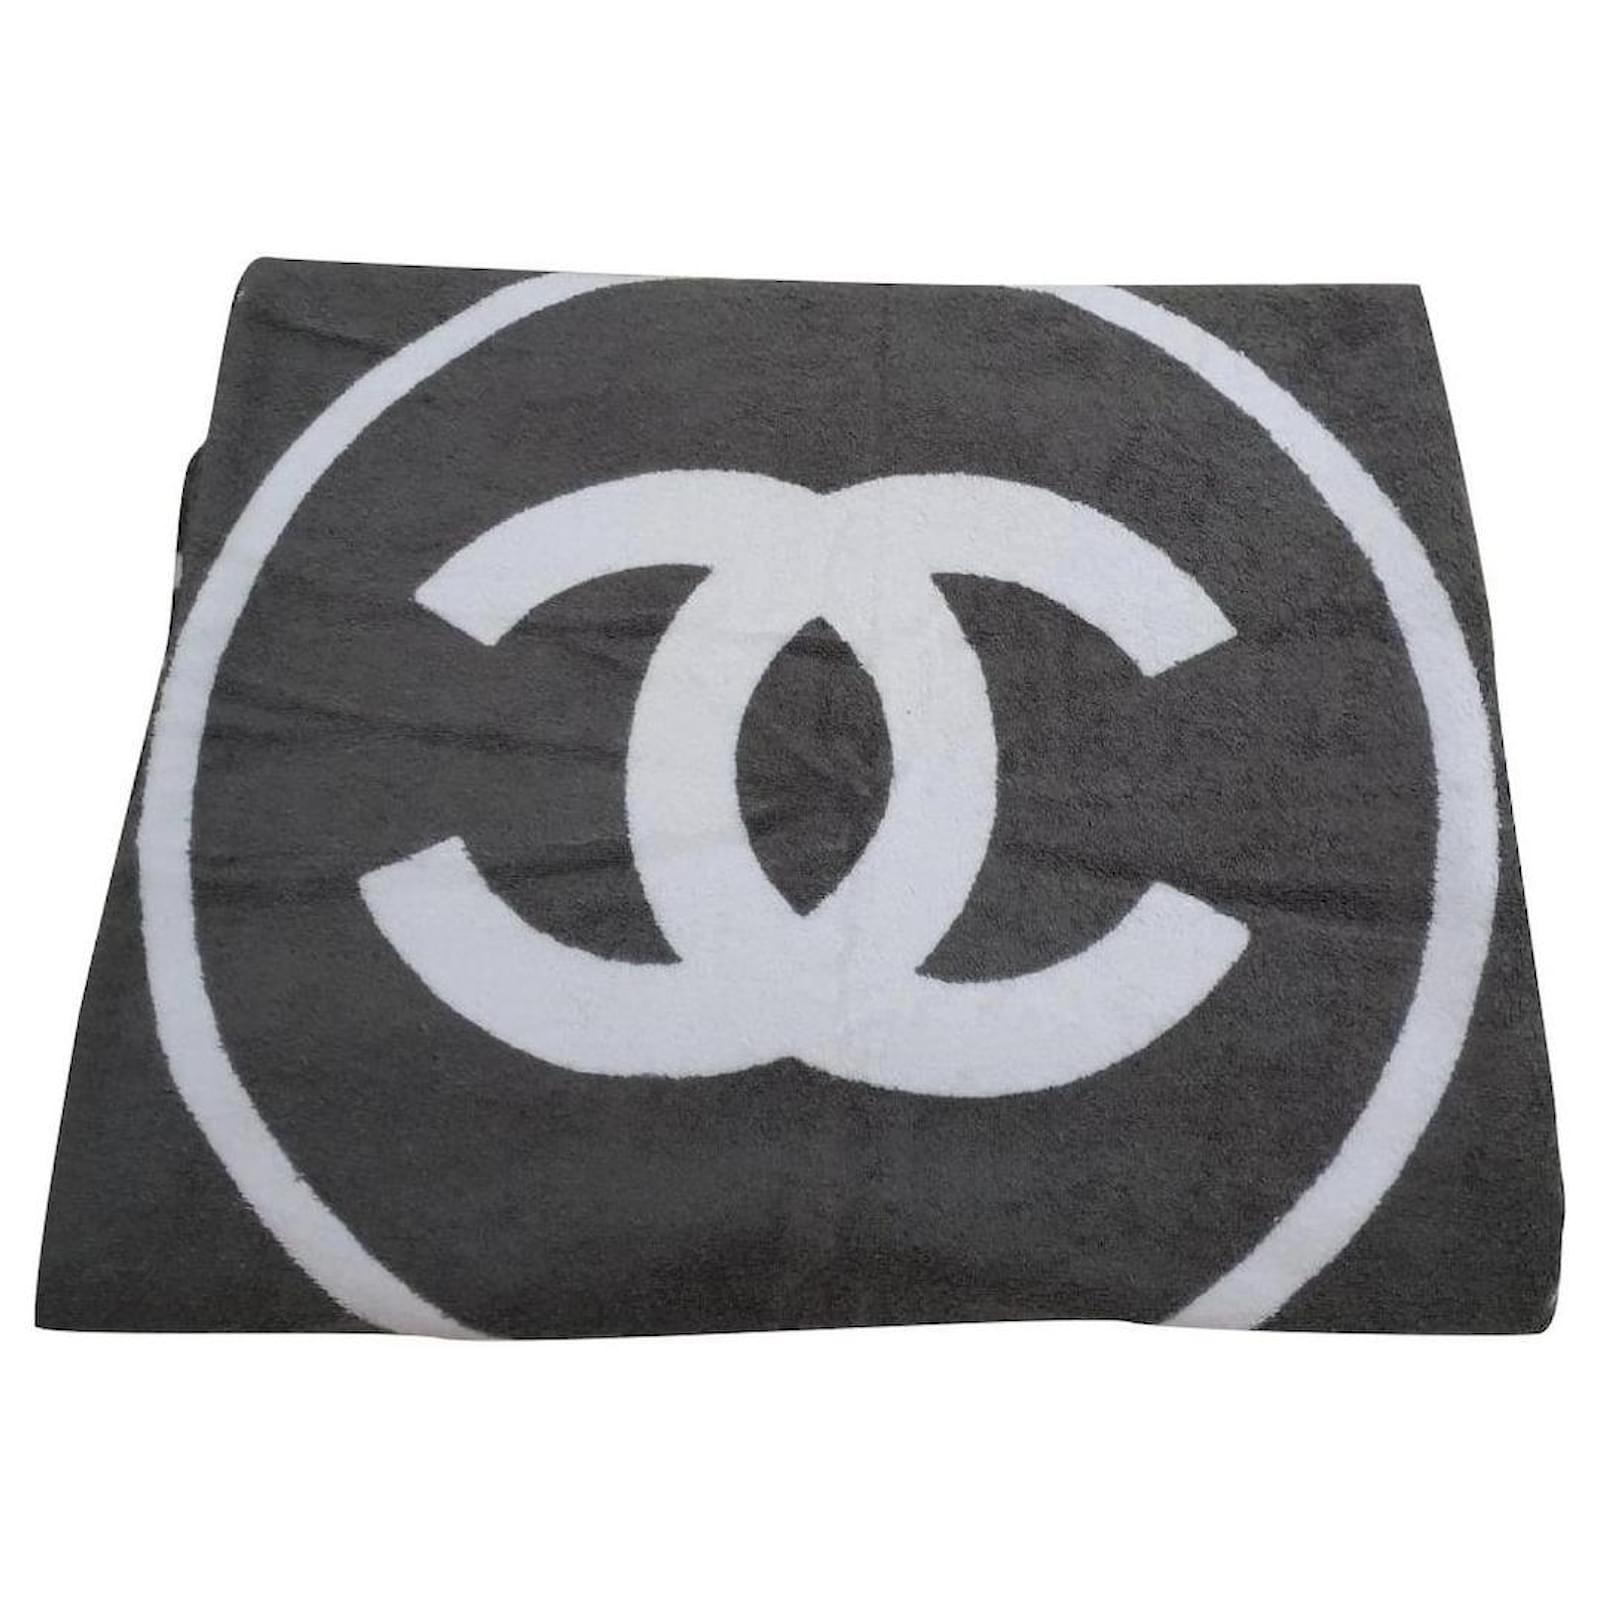 Chanel XL towel